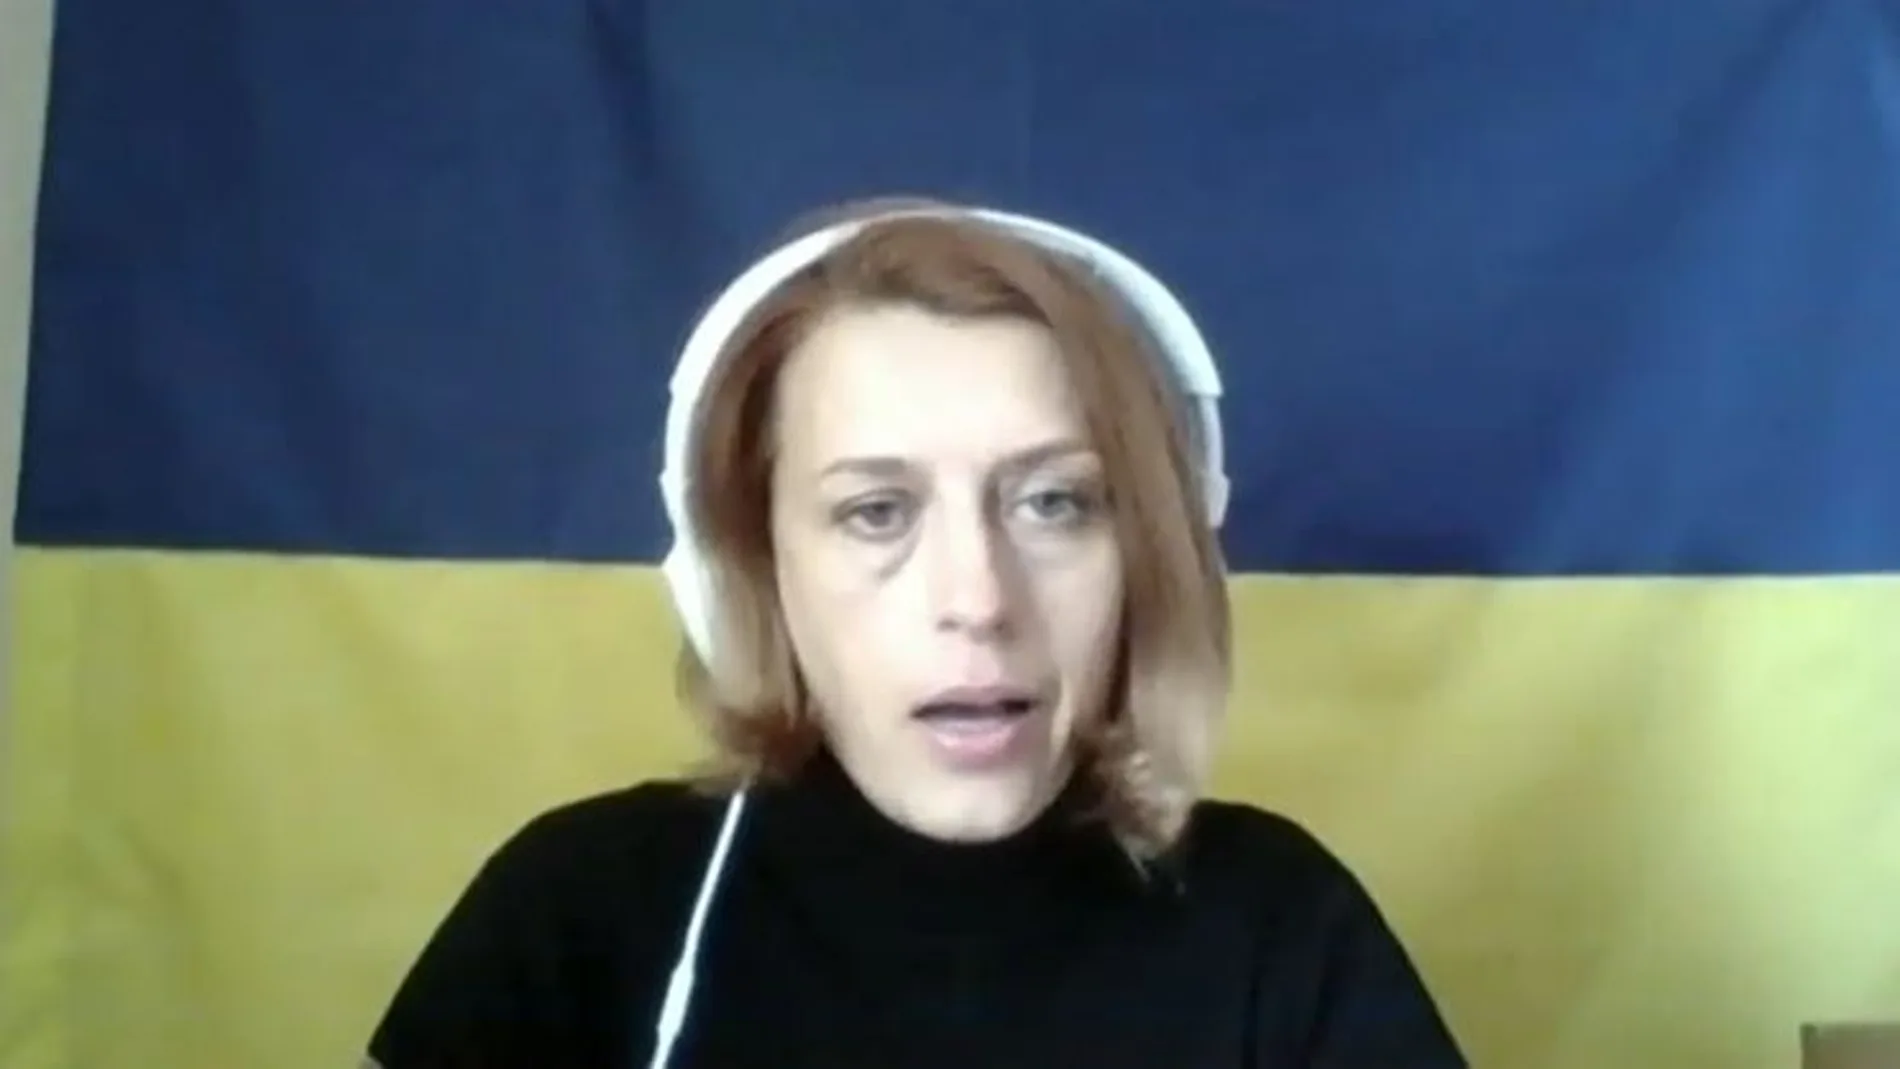 Olga Tarnovska en Kiev